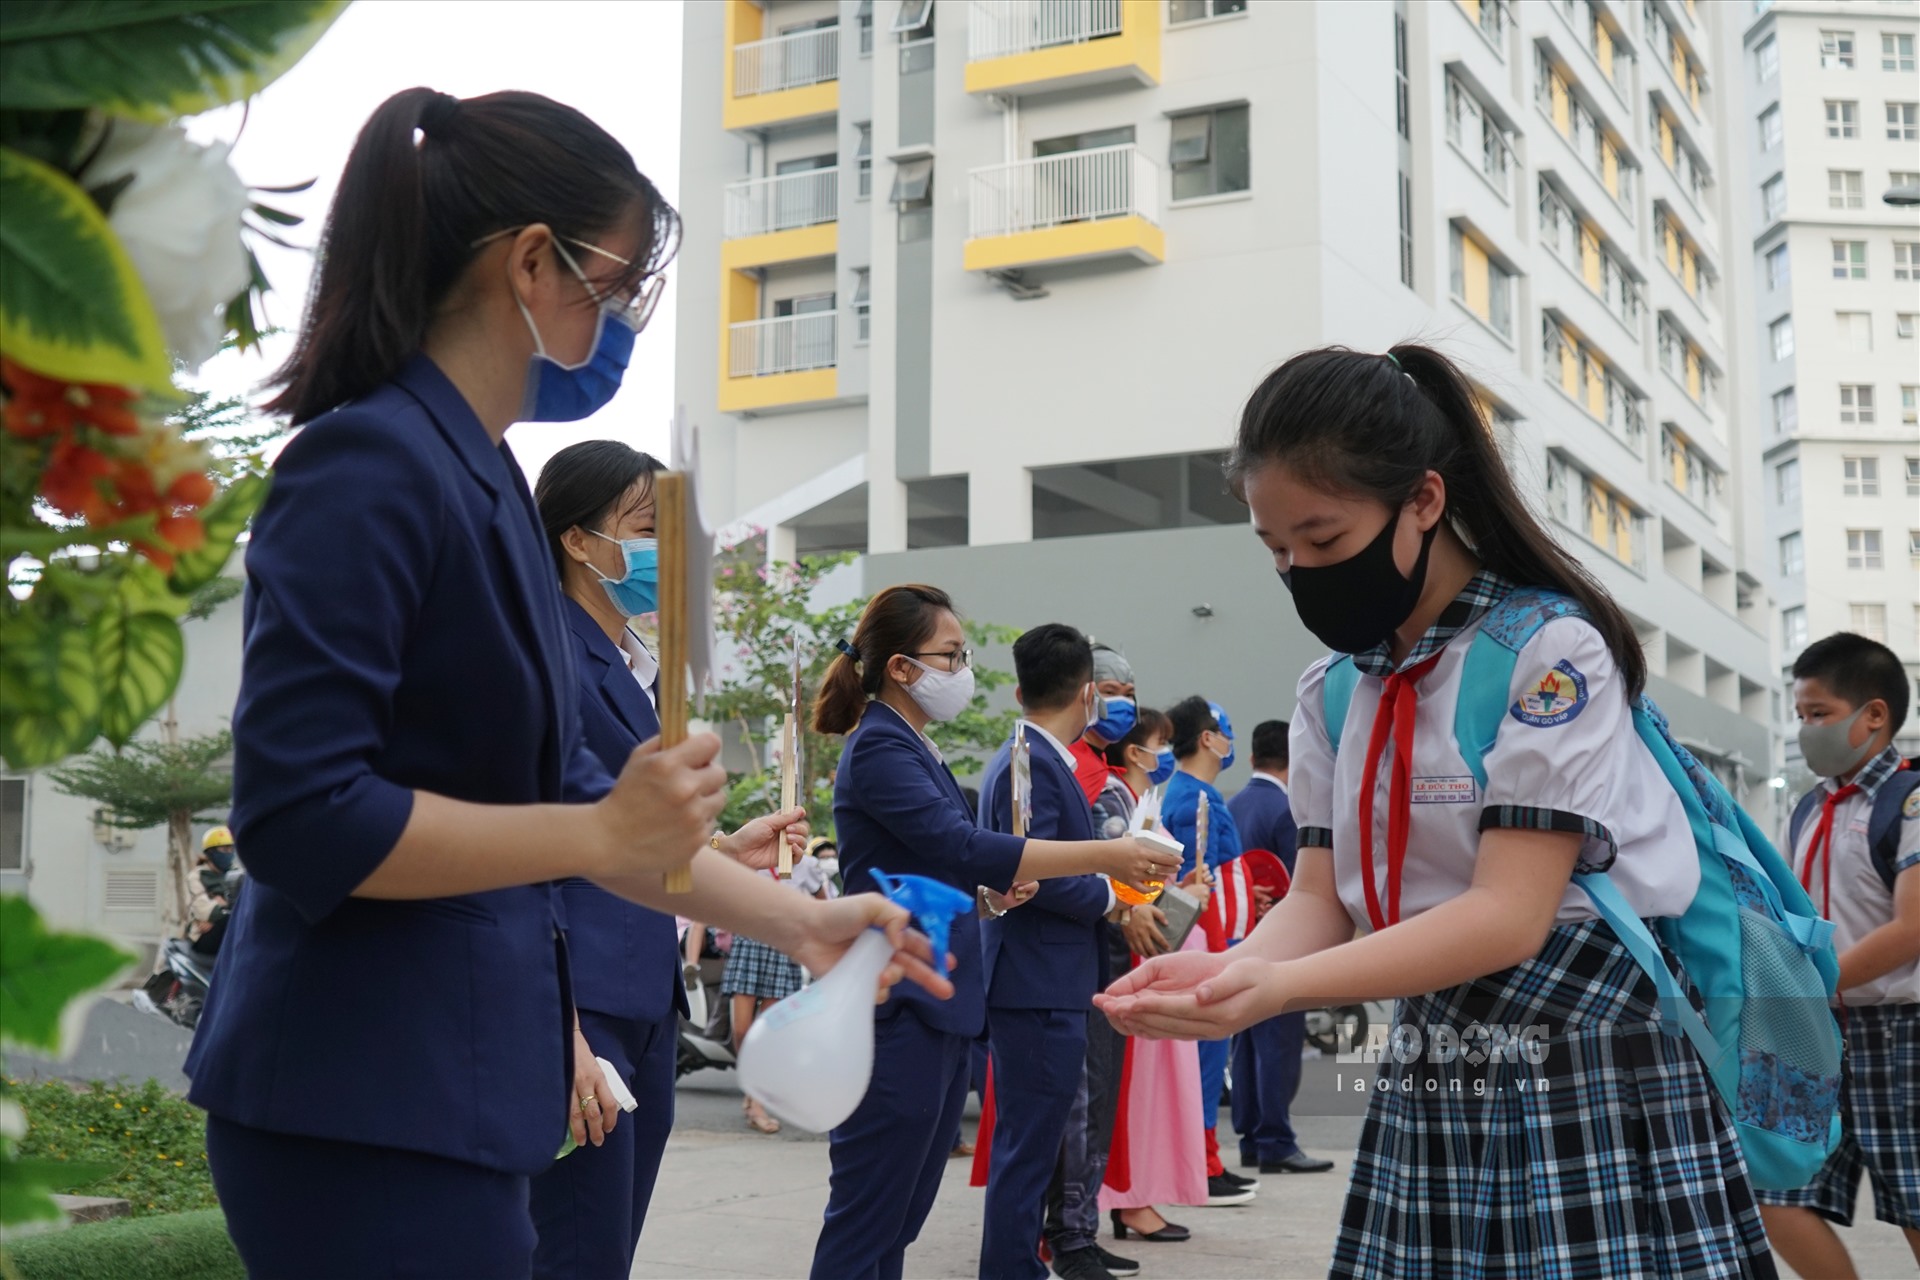 Nhà trường đã tổ chức kiểm tra thân nhiệt, chuẩn bị nước sát khuẩn cho học sinh trước khi vào lớp học.